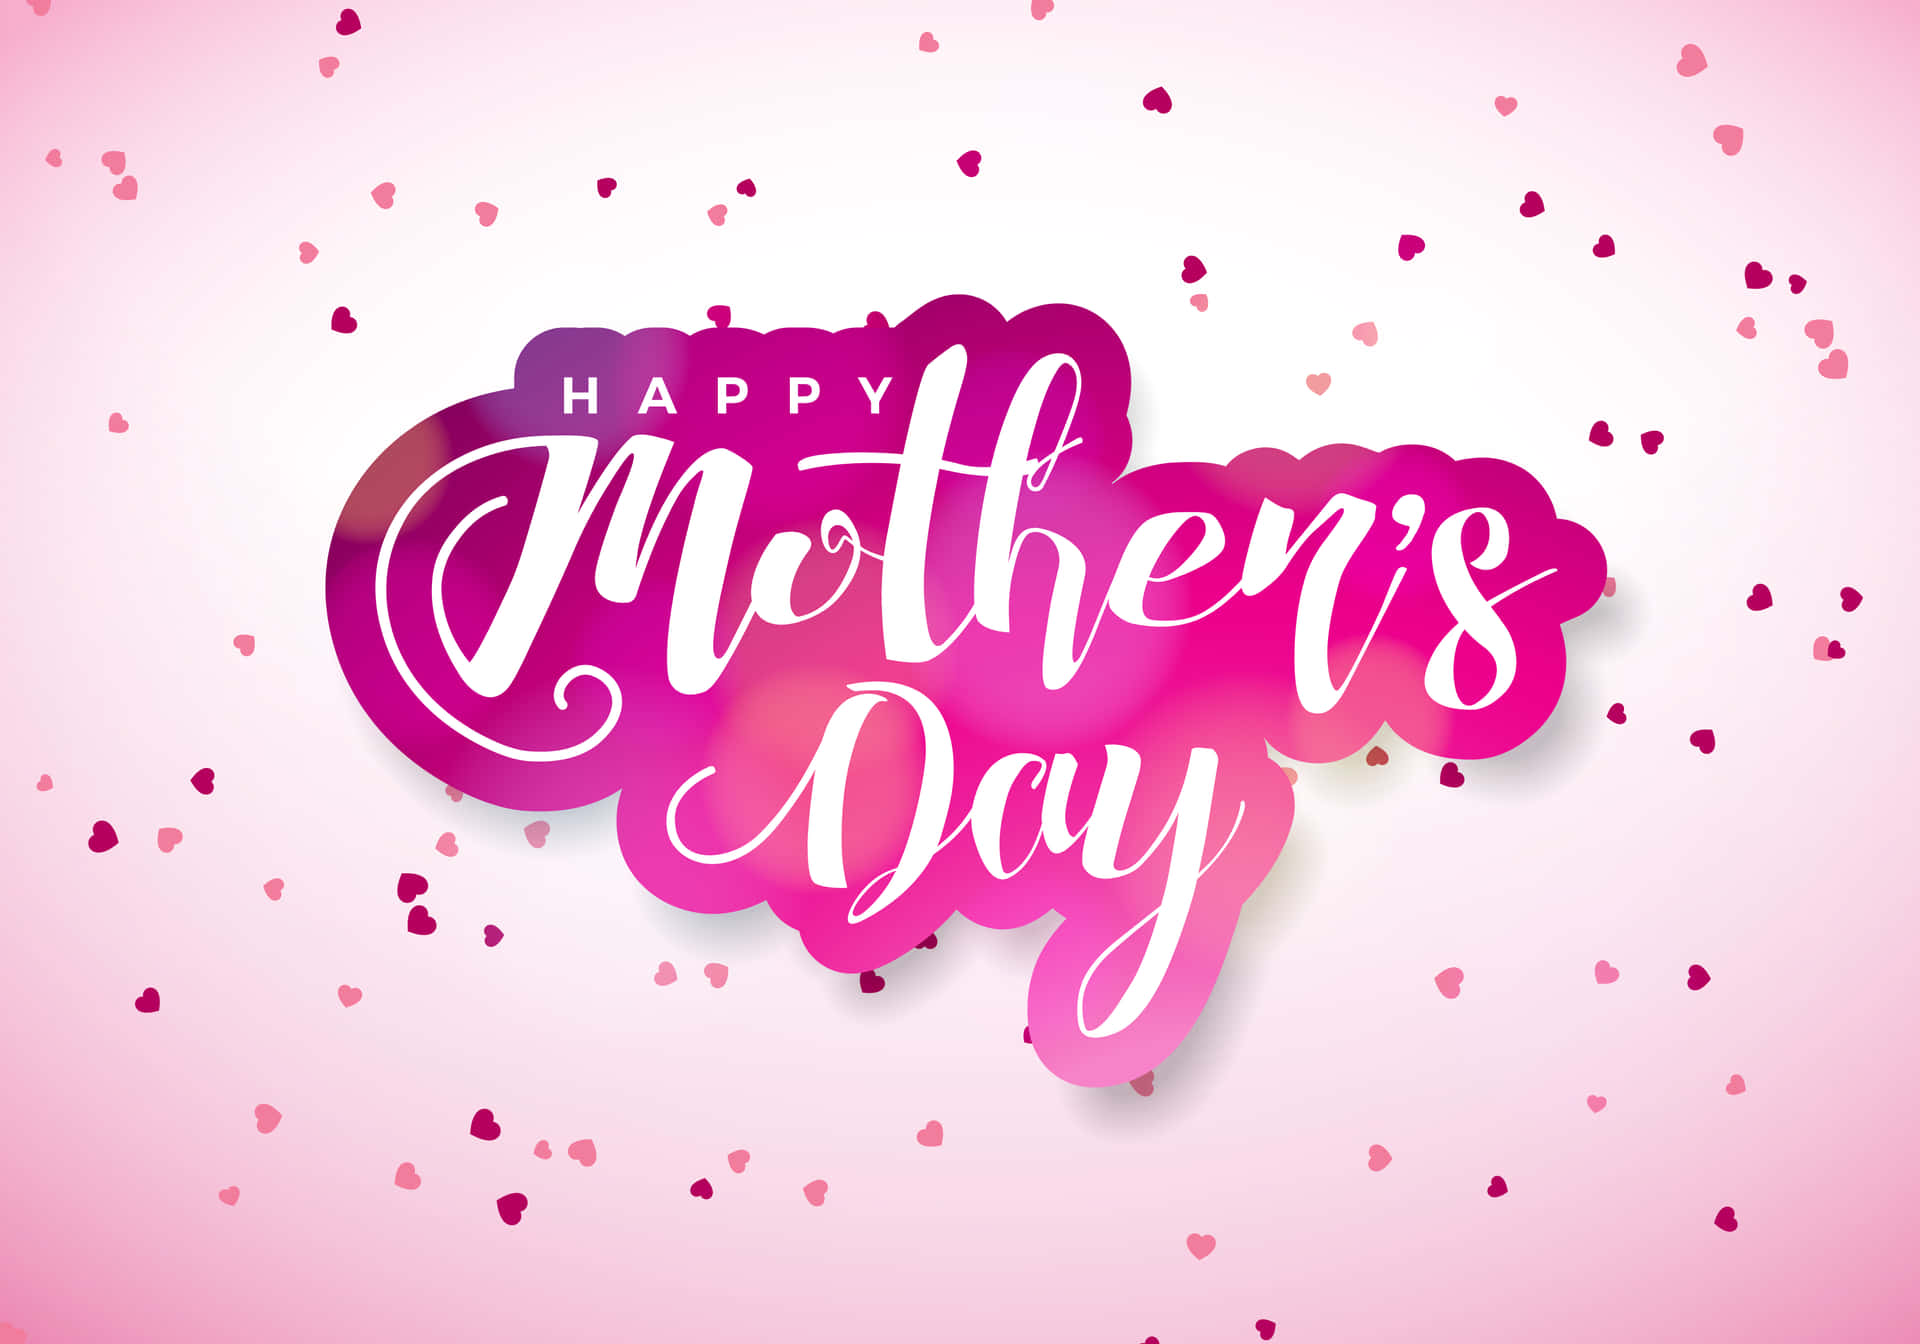 Tarjetade Felicitación Para El Día De La Madre Con Confeti Rosa.